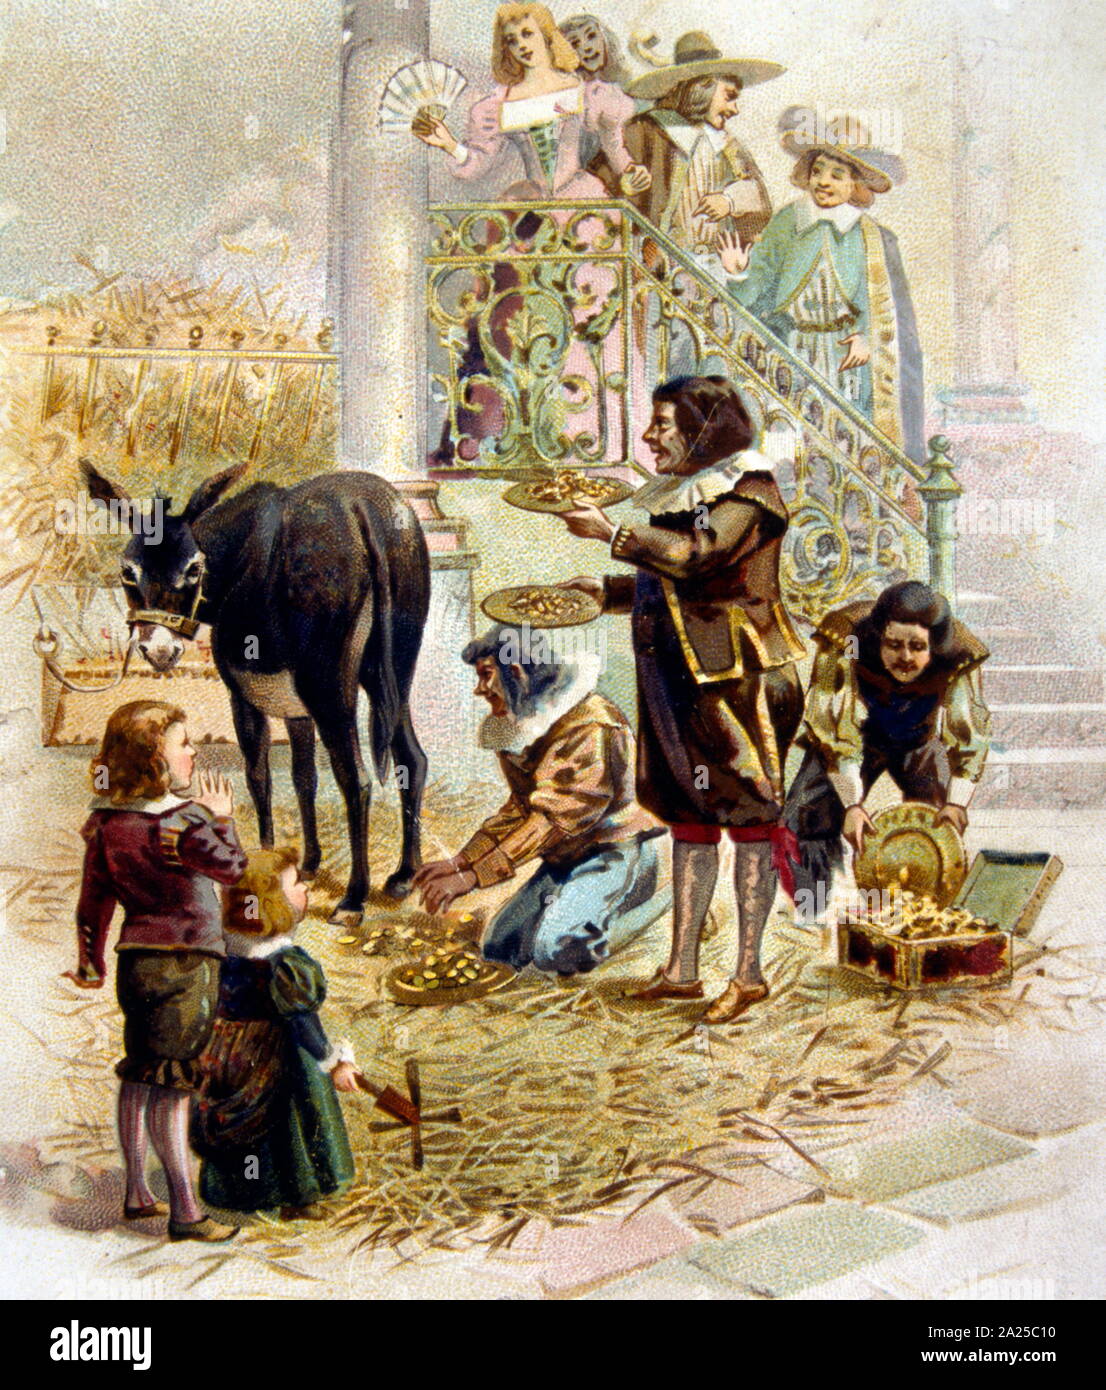 Illustration pour une édition de 1880 Donkeyskin (peau d'Ane), un conte de fées littéraire française en vers écrit par Charles Perrault. Il a été d'abord publié en 1695 Banque D'Images